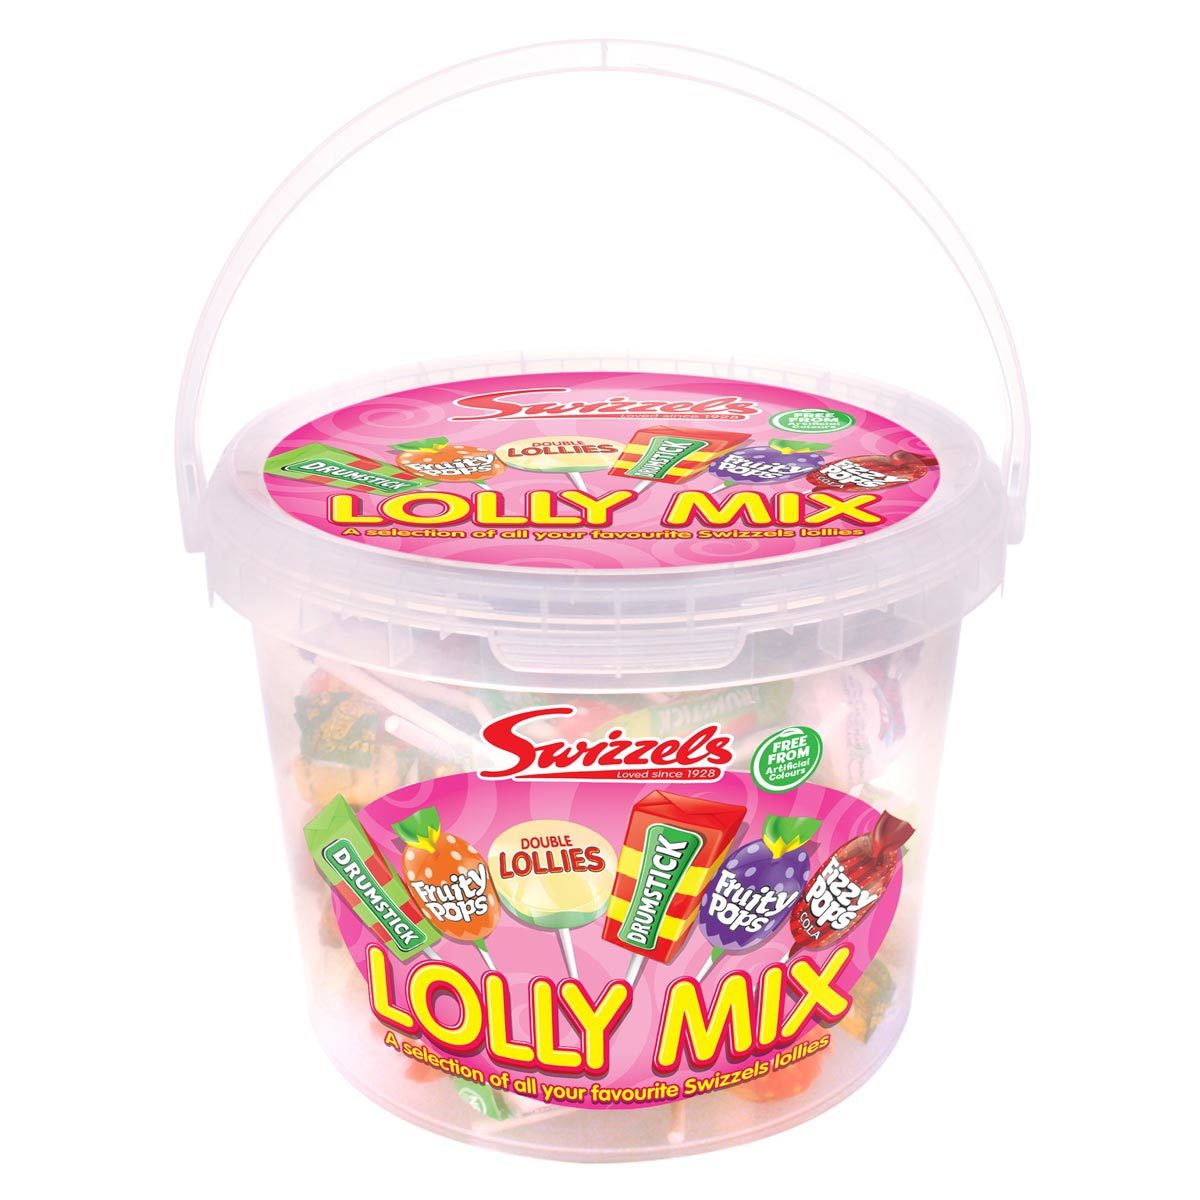 Swizzels Matlow Lolly Mix, 1.06kg